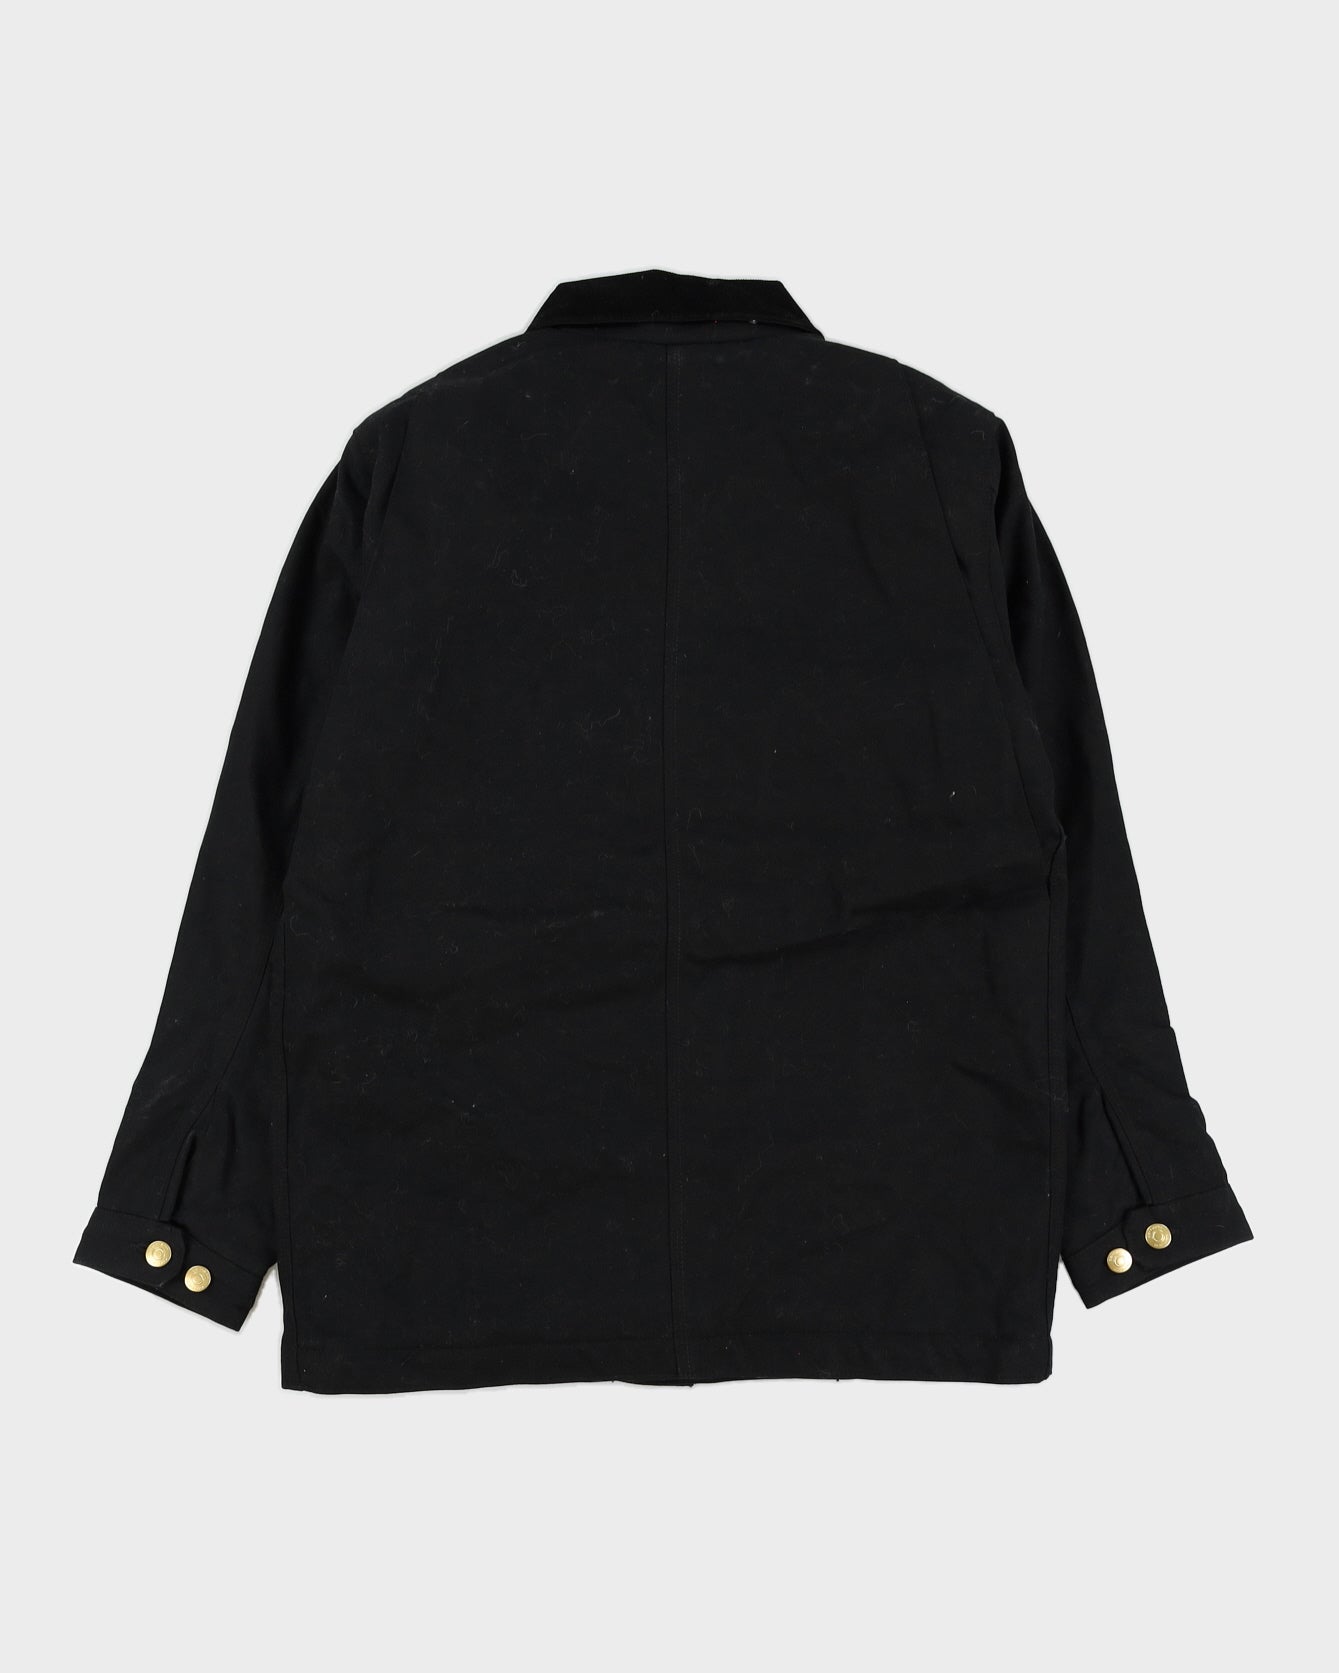 Carhartt Black Canvas Jacket - M